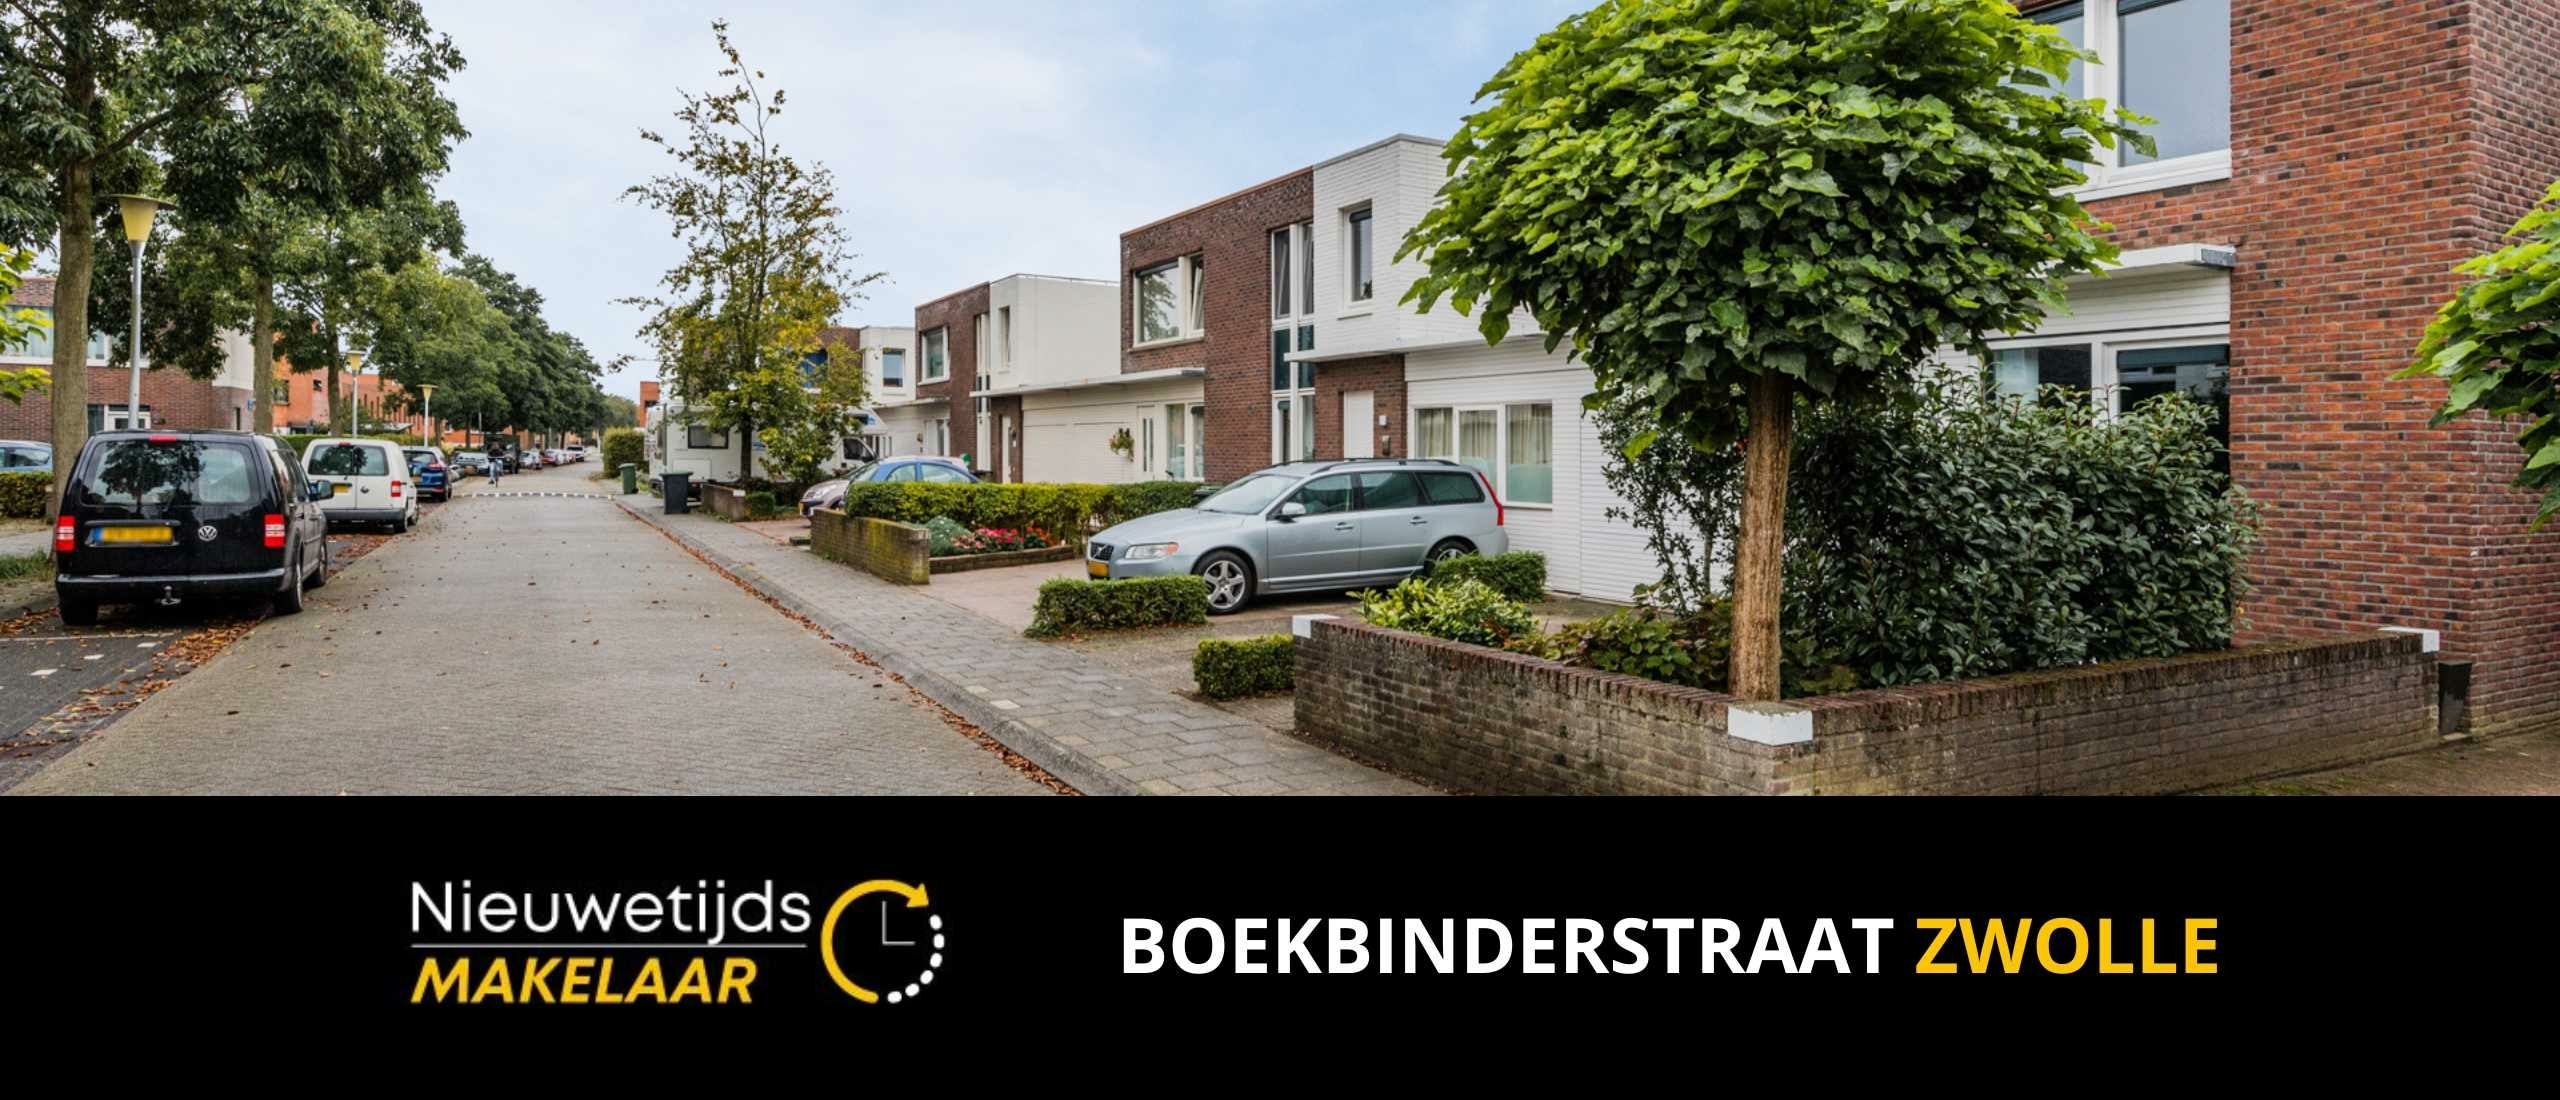 Boekbinderstraat Zwolle Stadshagen